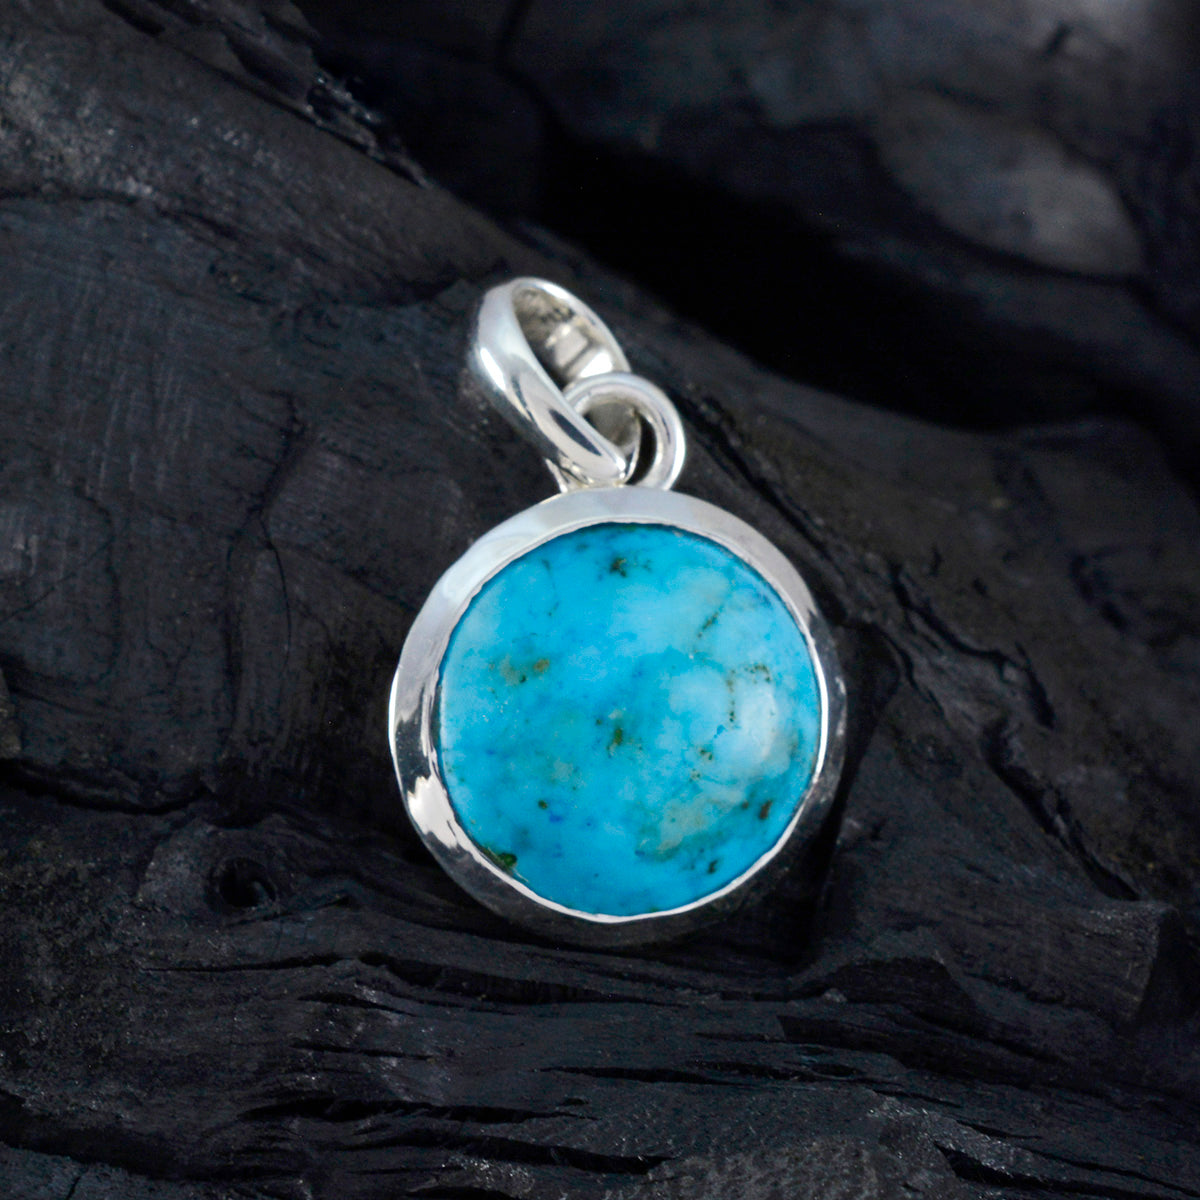 Riyo drop gems cabujón redondo azul turquesa colgante de plata regalo para compromiso